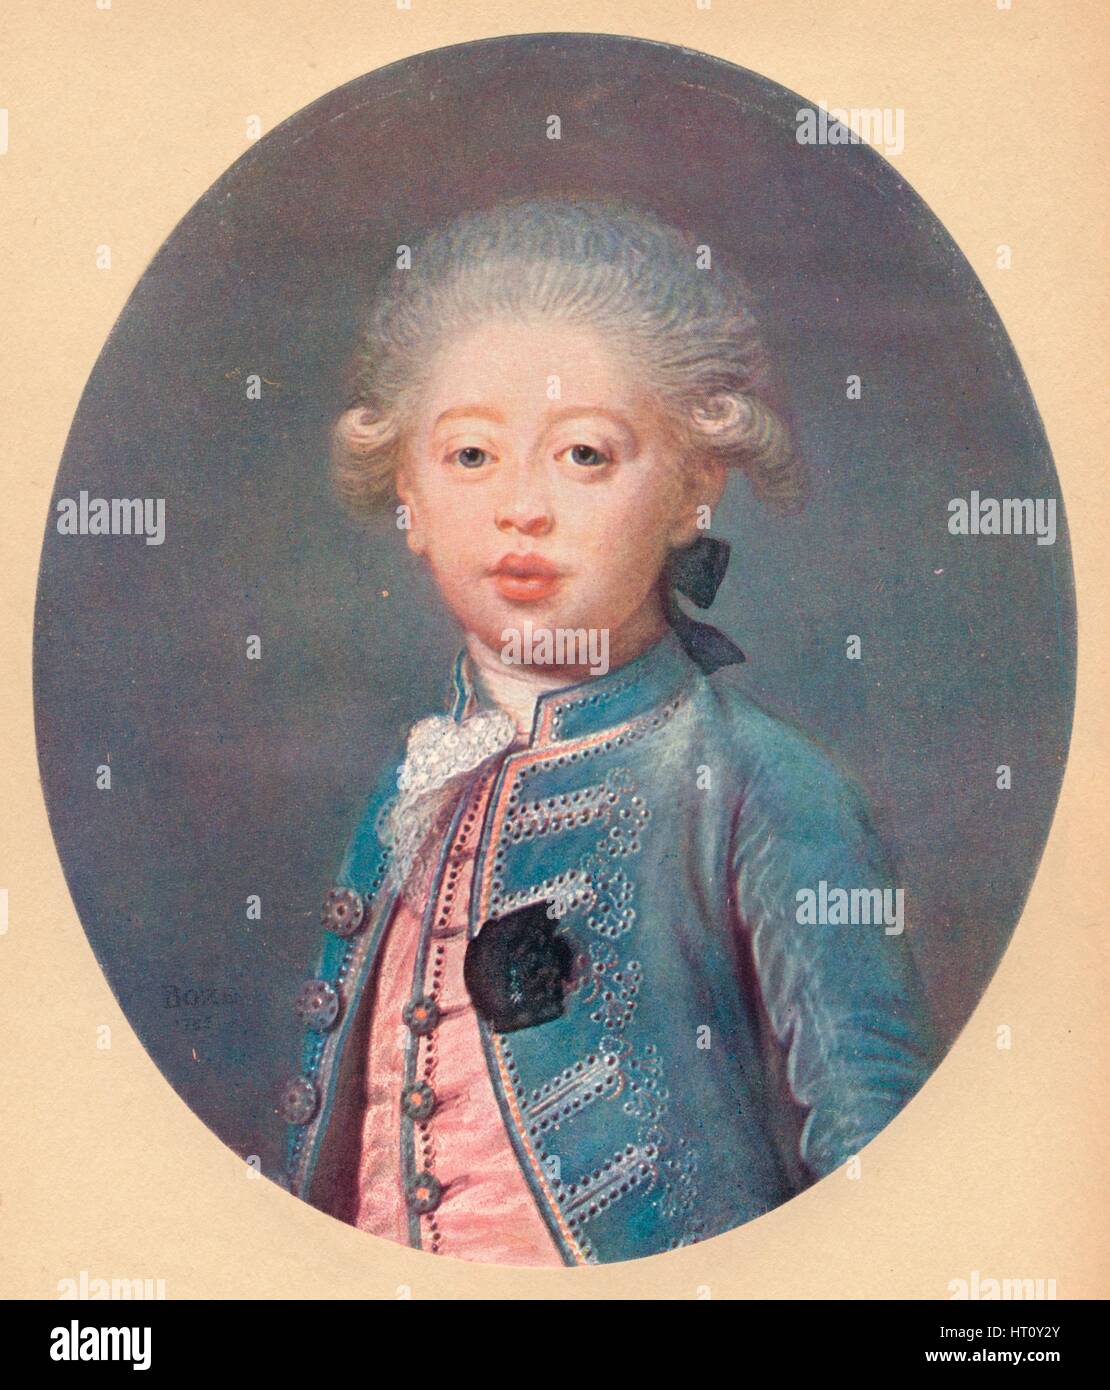 'Louis-Antoine d'Artois Duke of Angouleme', c1785. Artist: Joseph Boze. Stock Photo